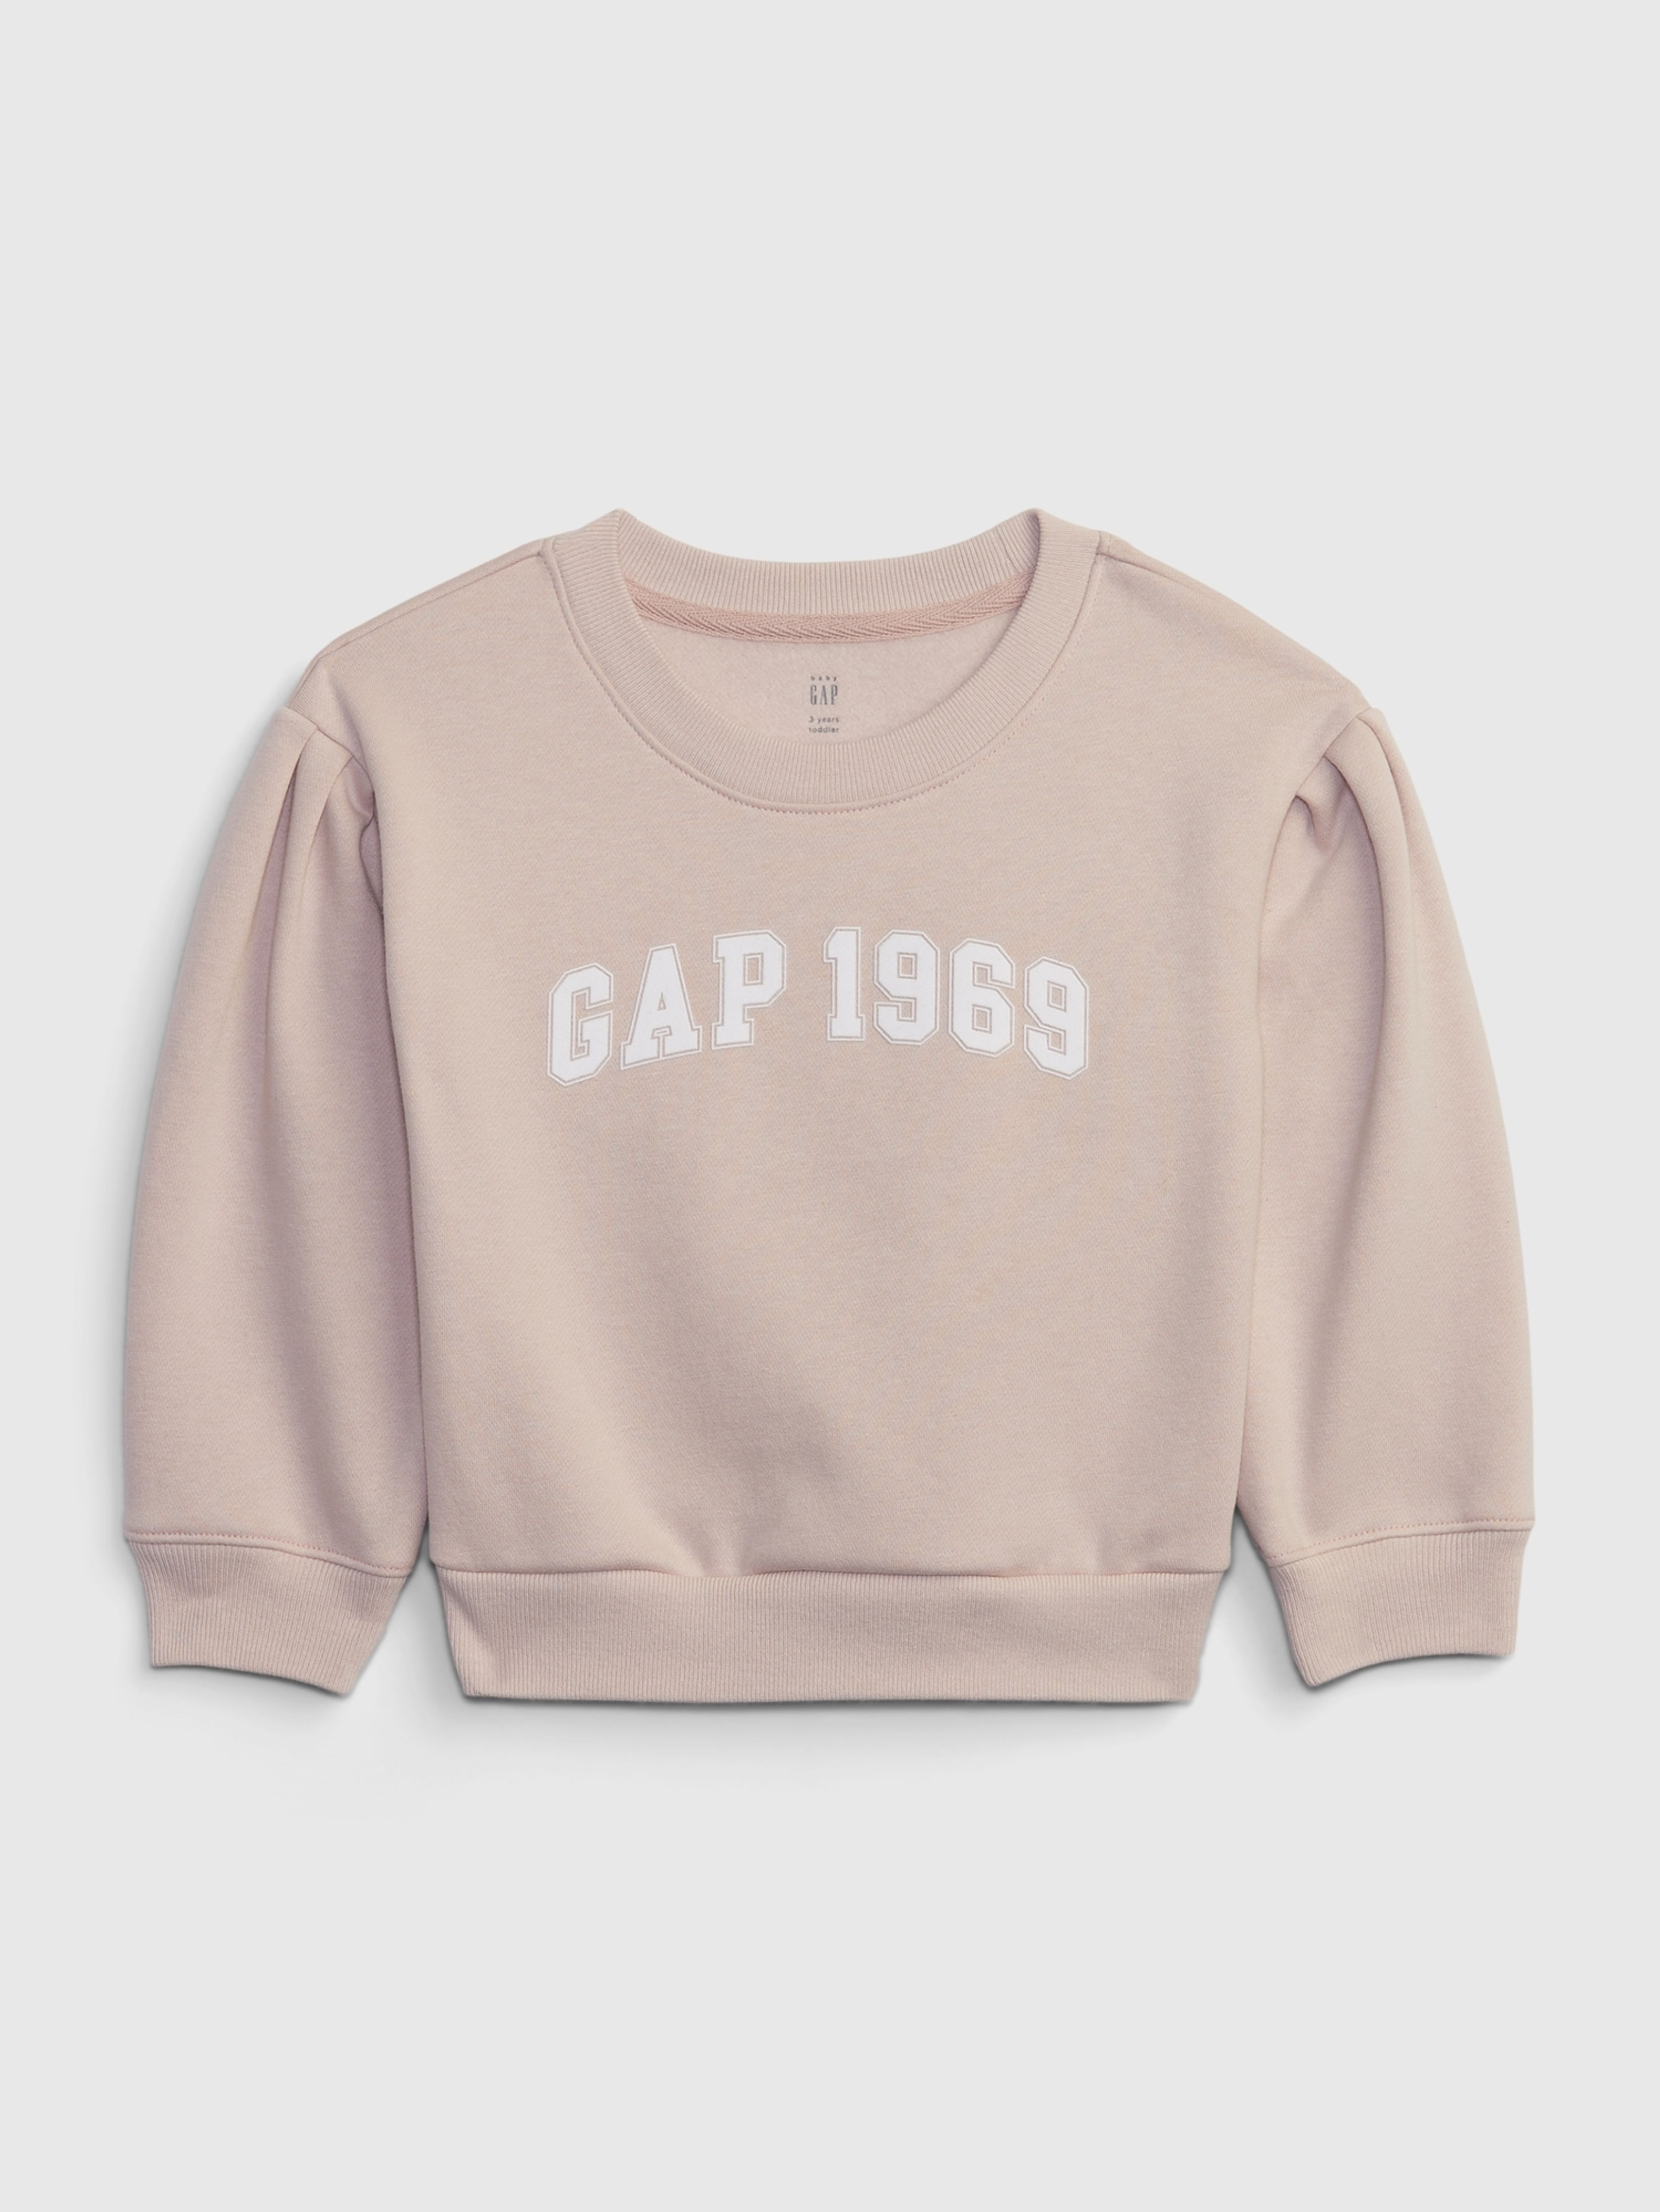 Kinder Sweatshirt GAP 1969